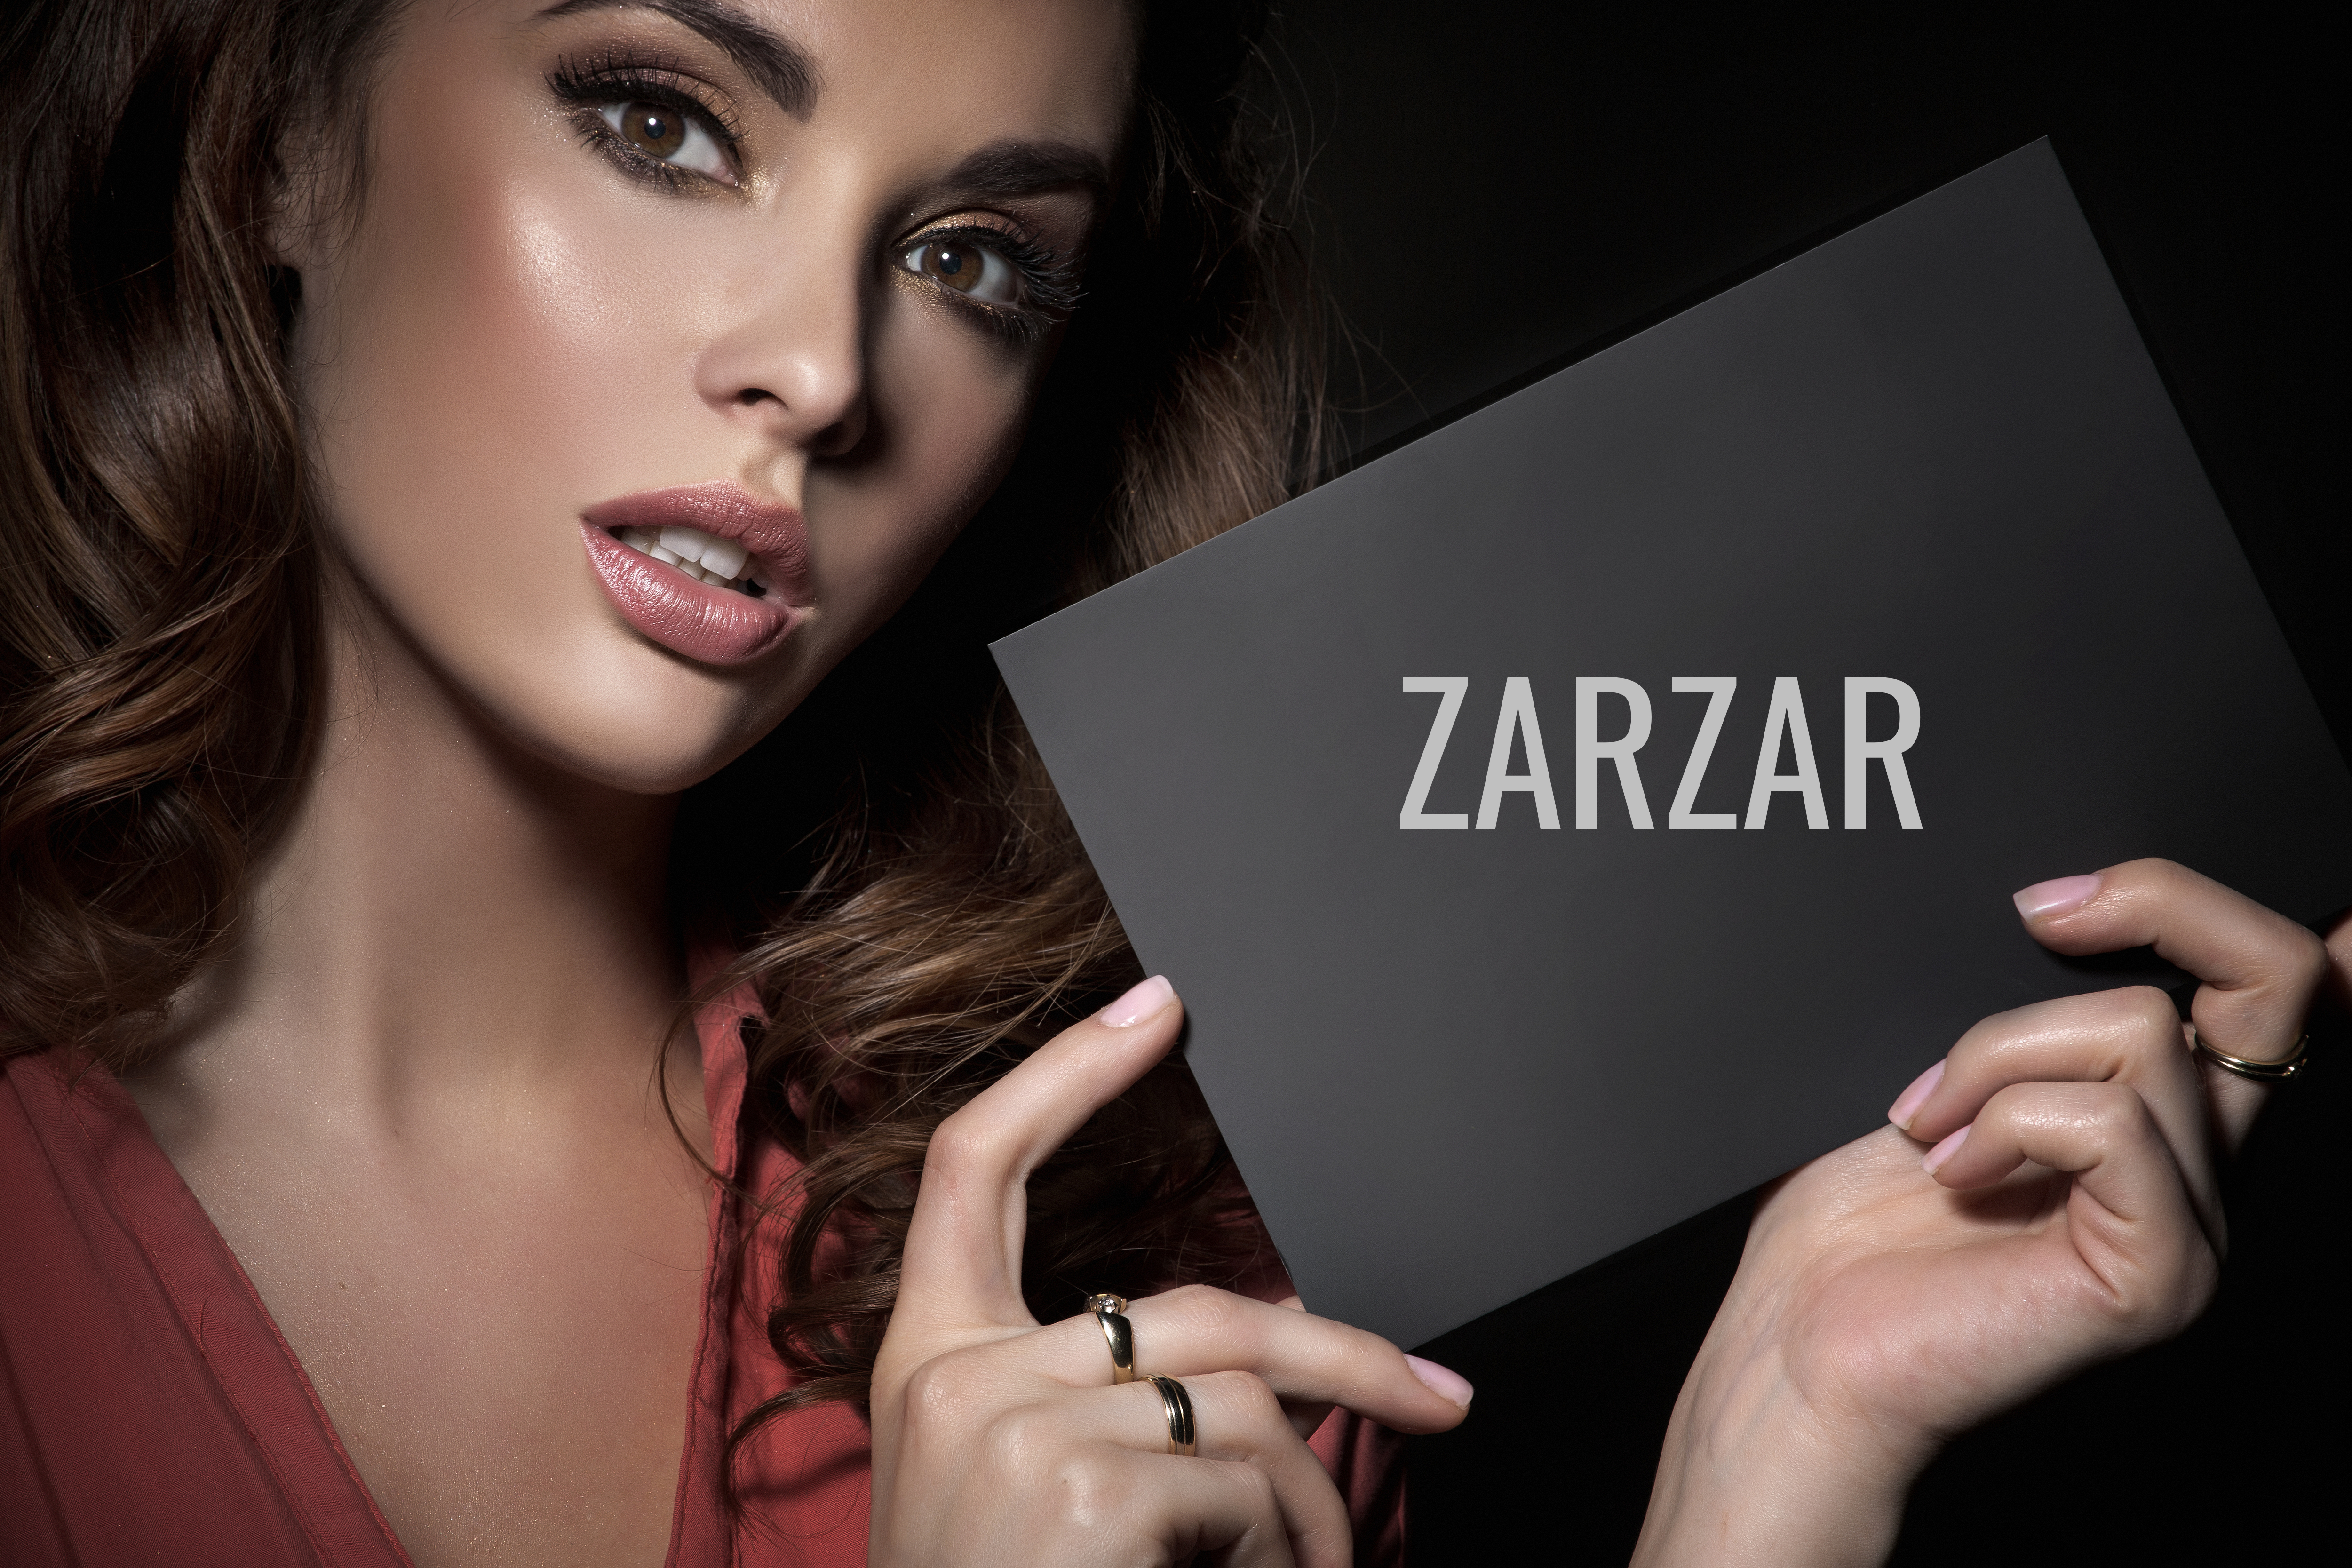 Beautiful ZARZAR FASHION Makeup For Women. Beautiful Makeup For Supermodels & Fashion Models.